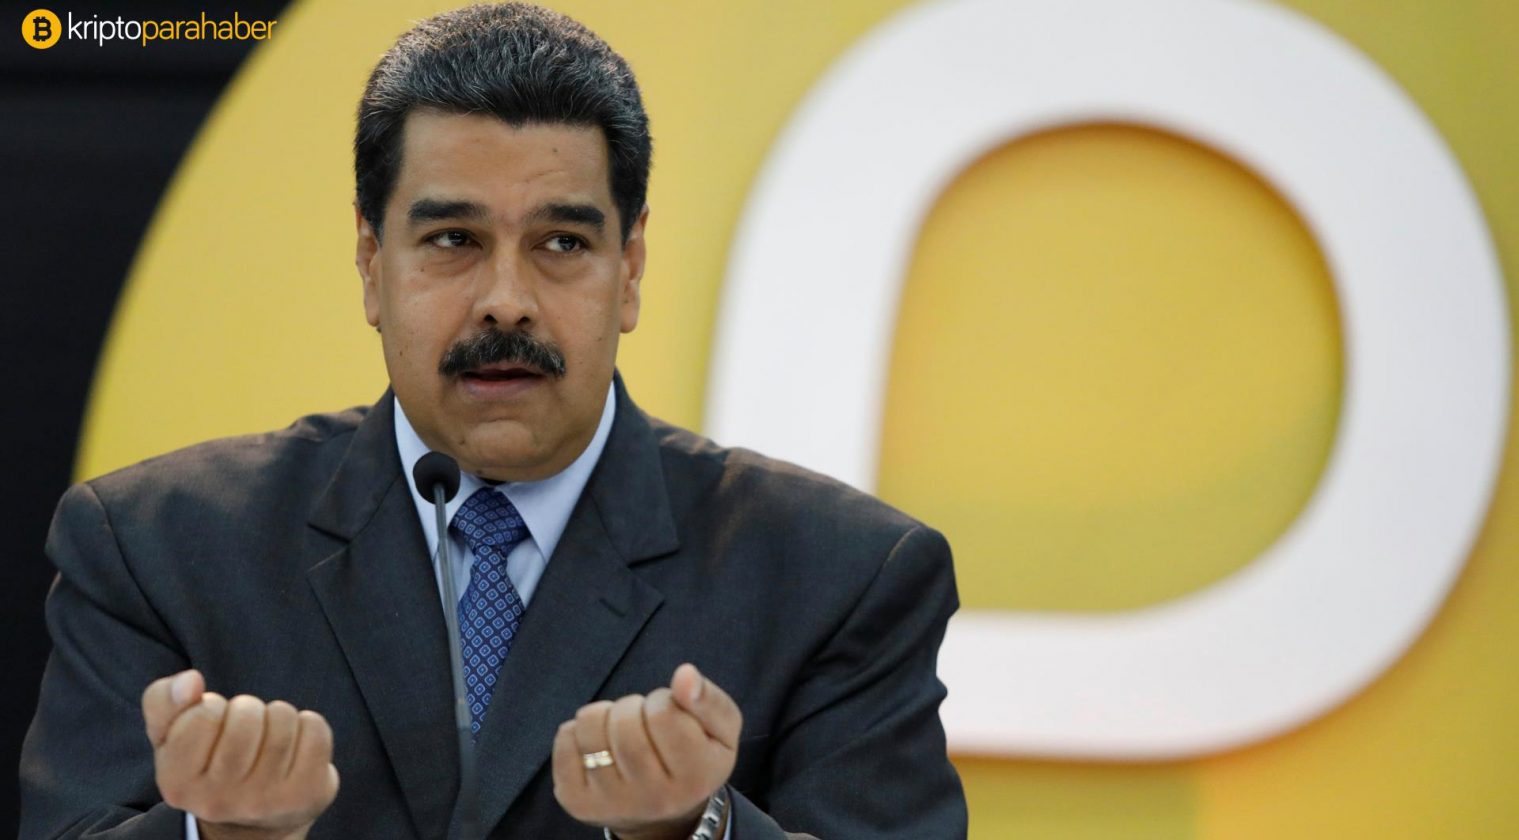 ABD’den Nicolas Maduro hakkında suç duyurusu: “Kripto para kullanarak ağır suçlar işlediler.”